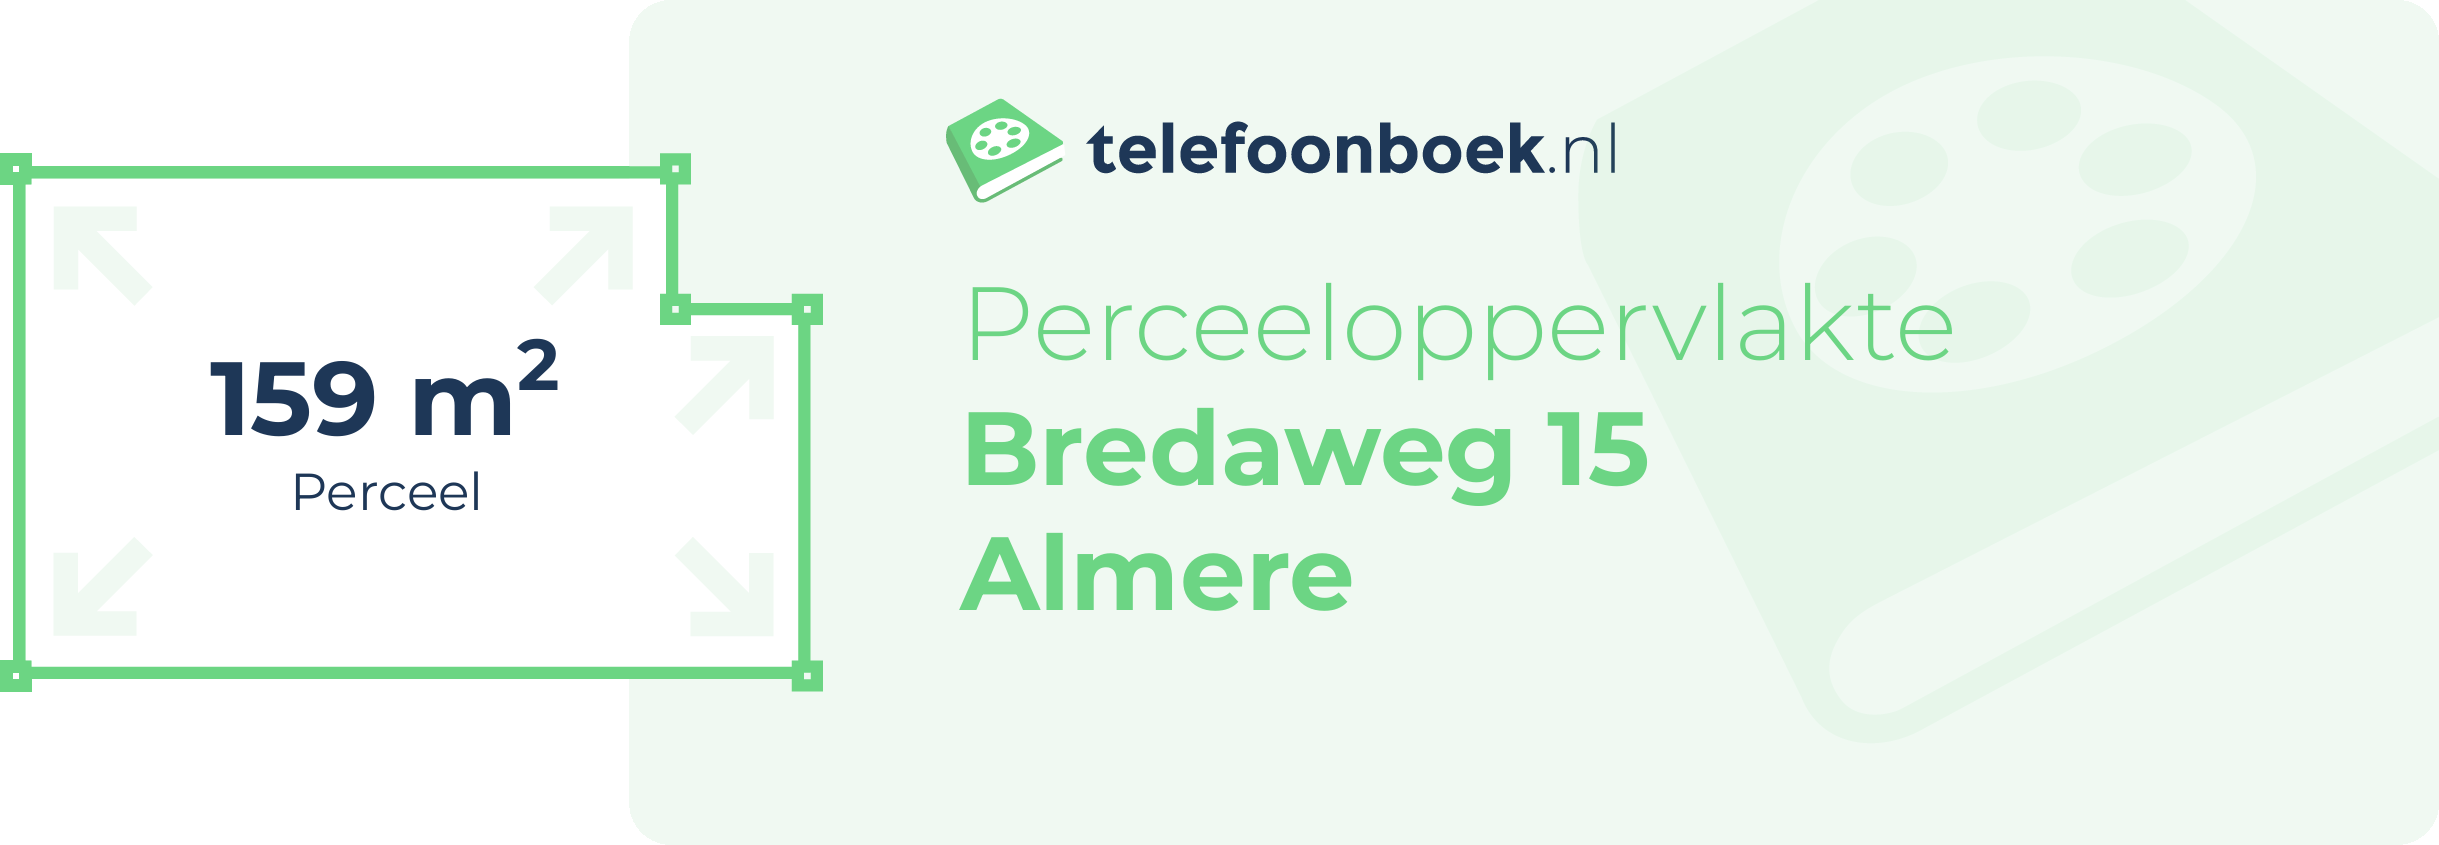 Perceeloppervlakte Bredaweg 15 Almere